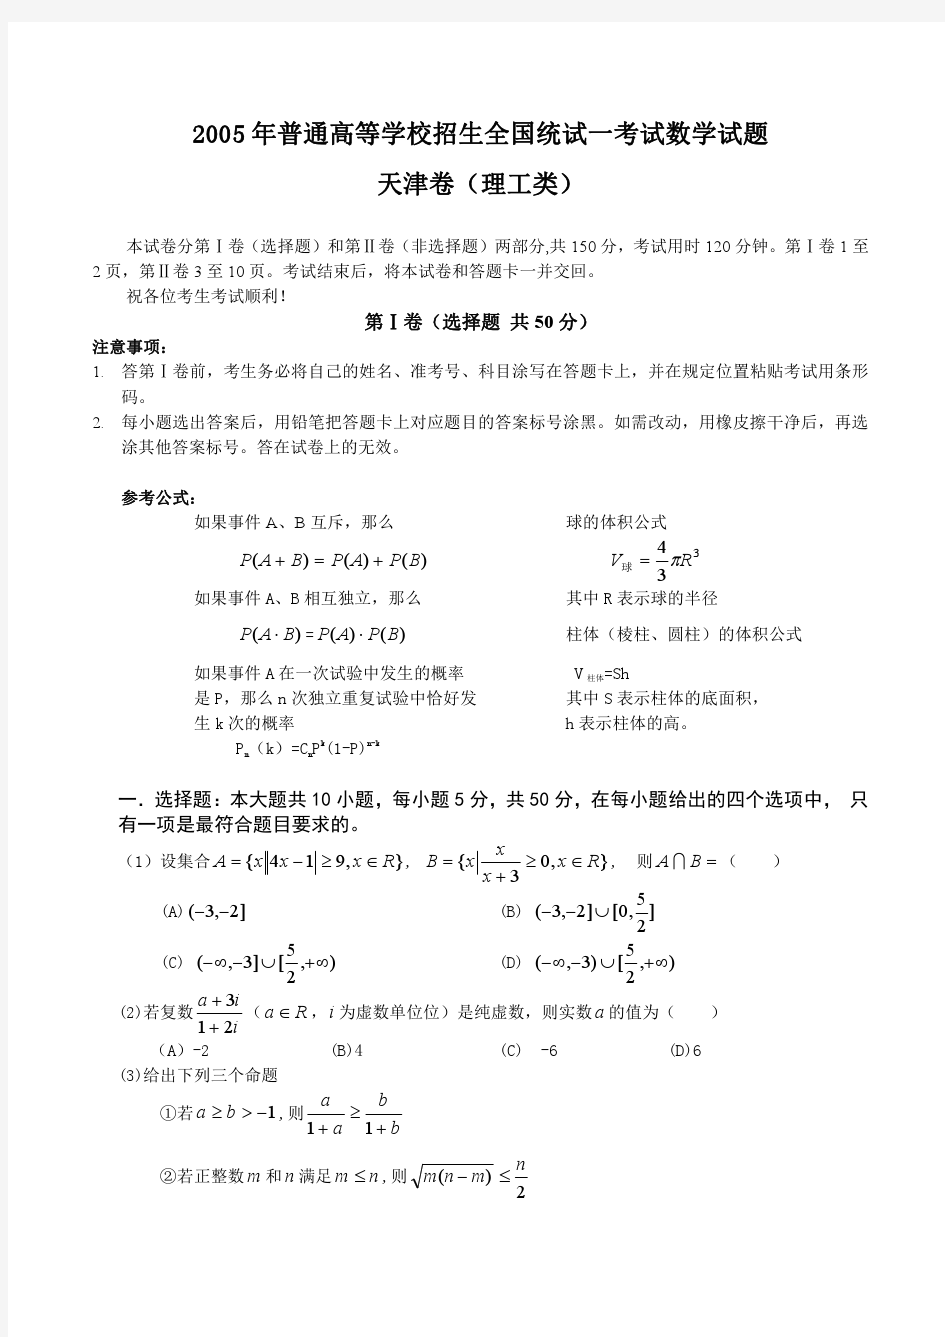 2005年高考理科数学试题及答案(天津)